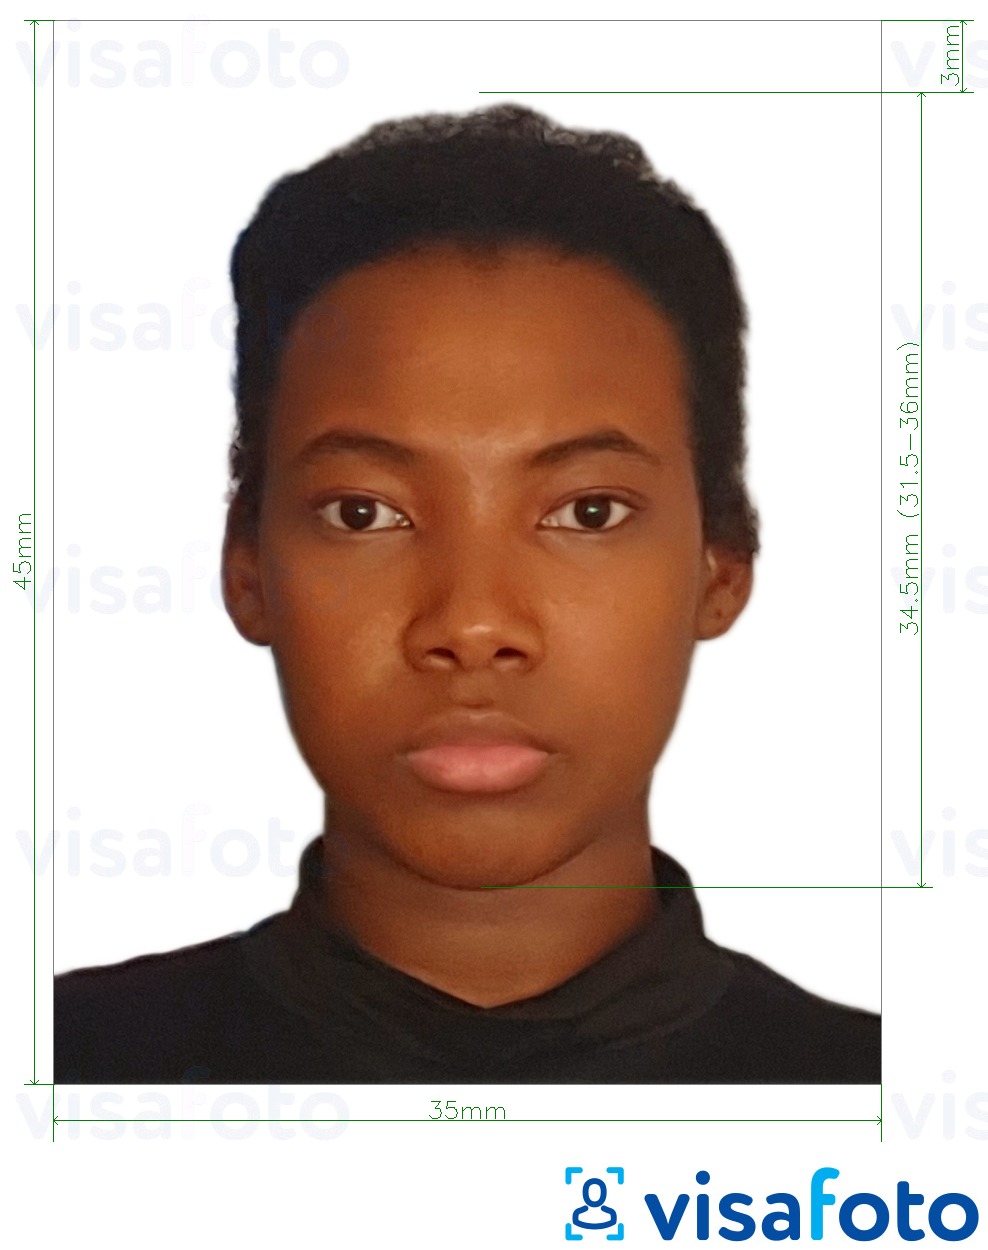  Seychelles pasporti 35x45 mm (45x50 mm gacha) uchun rasm namunasi zaruriy hajm xususiyatlariga ega